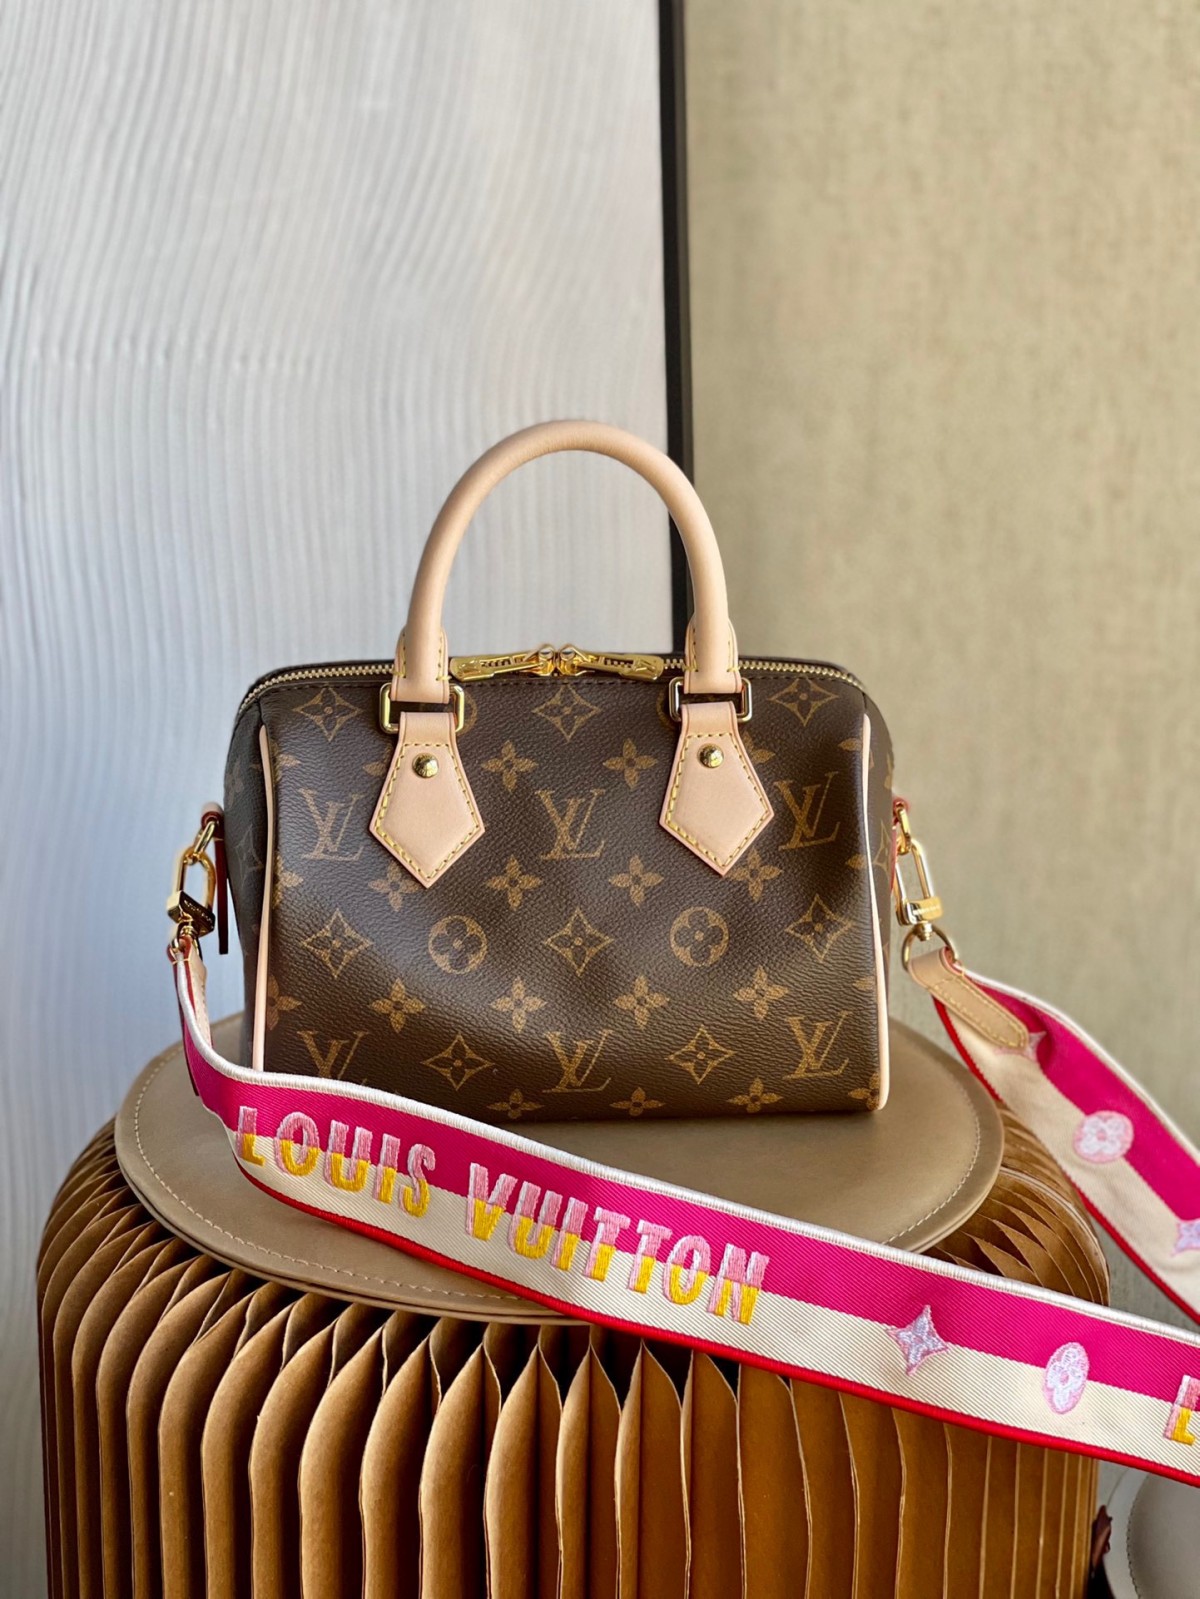 Video: Shebag best seller of Louis Vuitton bags in 2023 (2023 Week 50)-Pangalusna kualitas palsu Louis Vuitton Kantong Toko Online, Replica desainer kantong ru